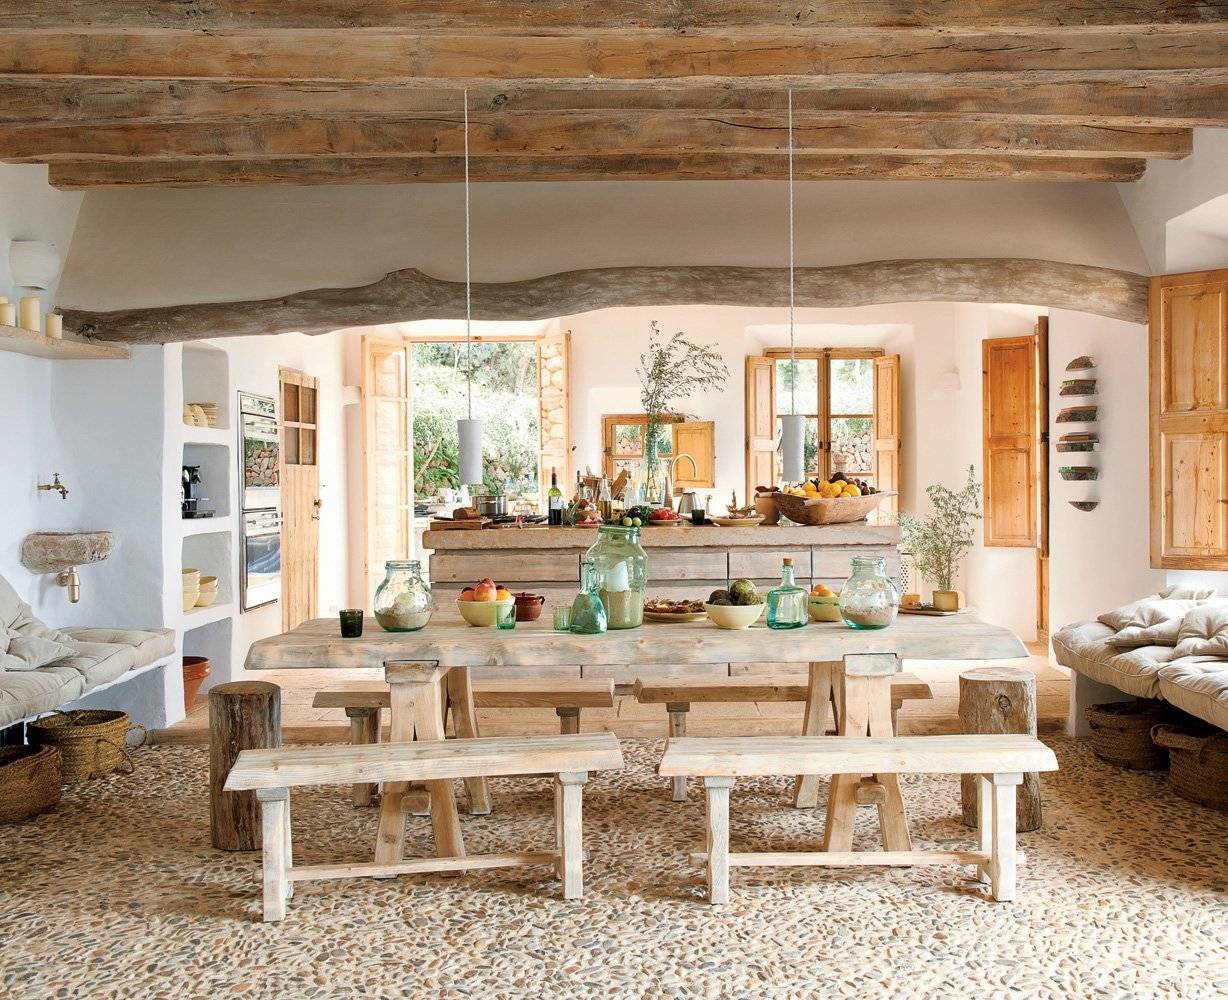 Стиль рустик в интерьере: кухня и мебель в рустикальном стиле, стол - деревенский уют для загородного дома